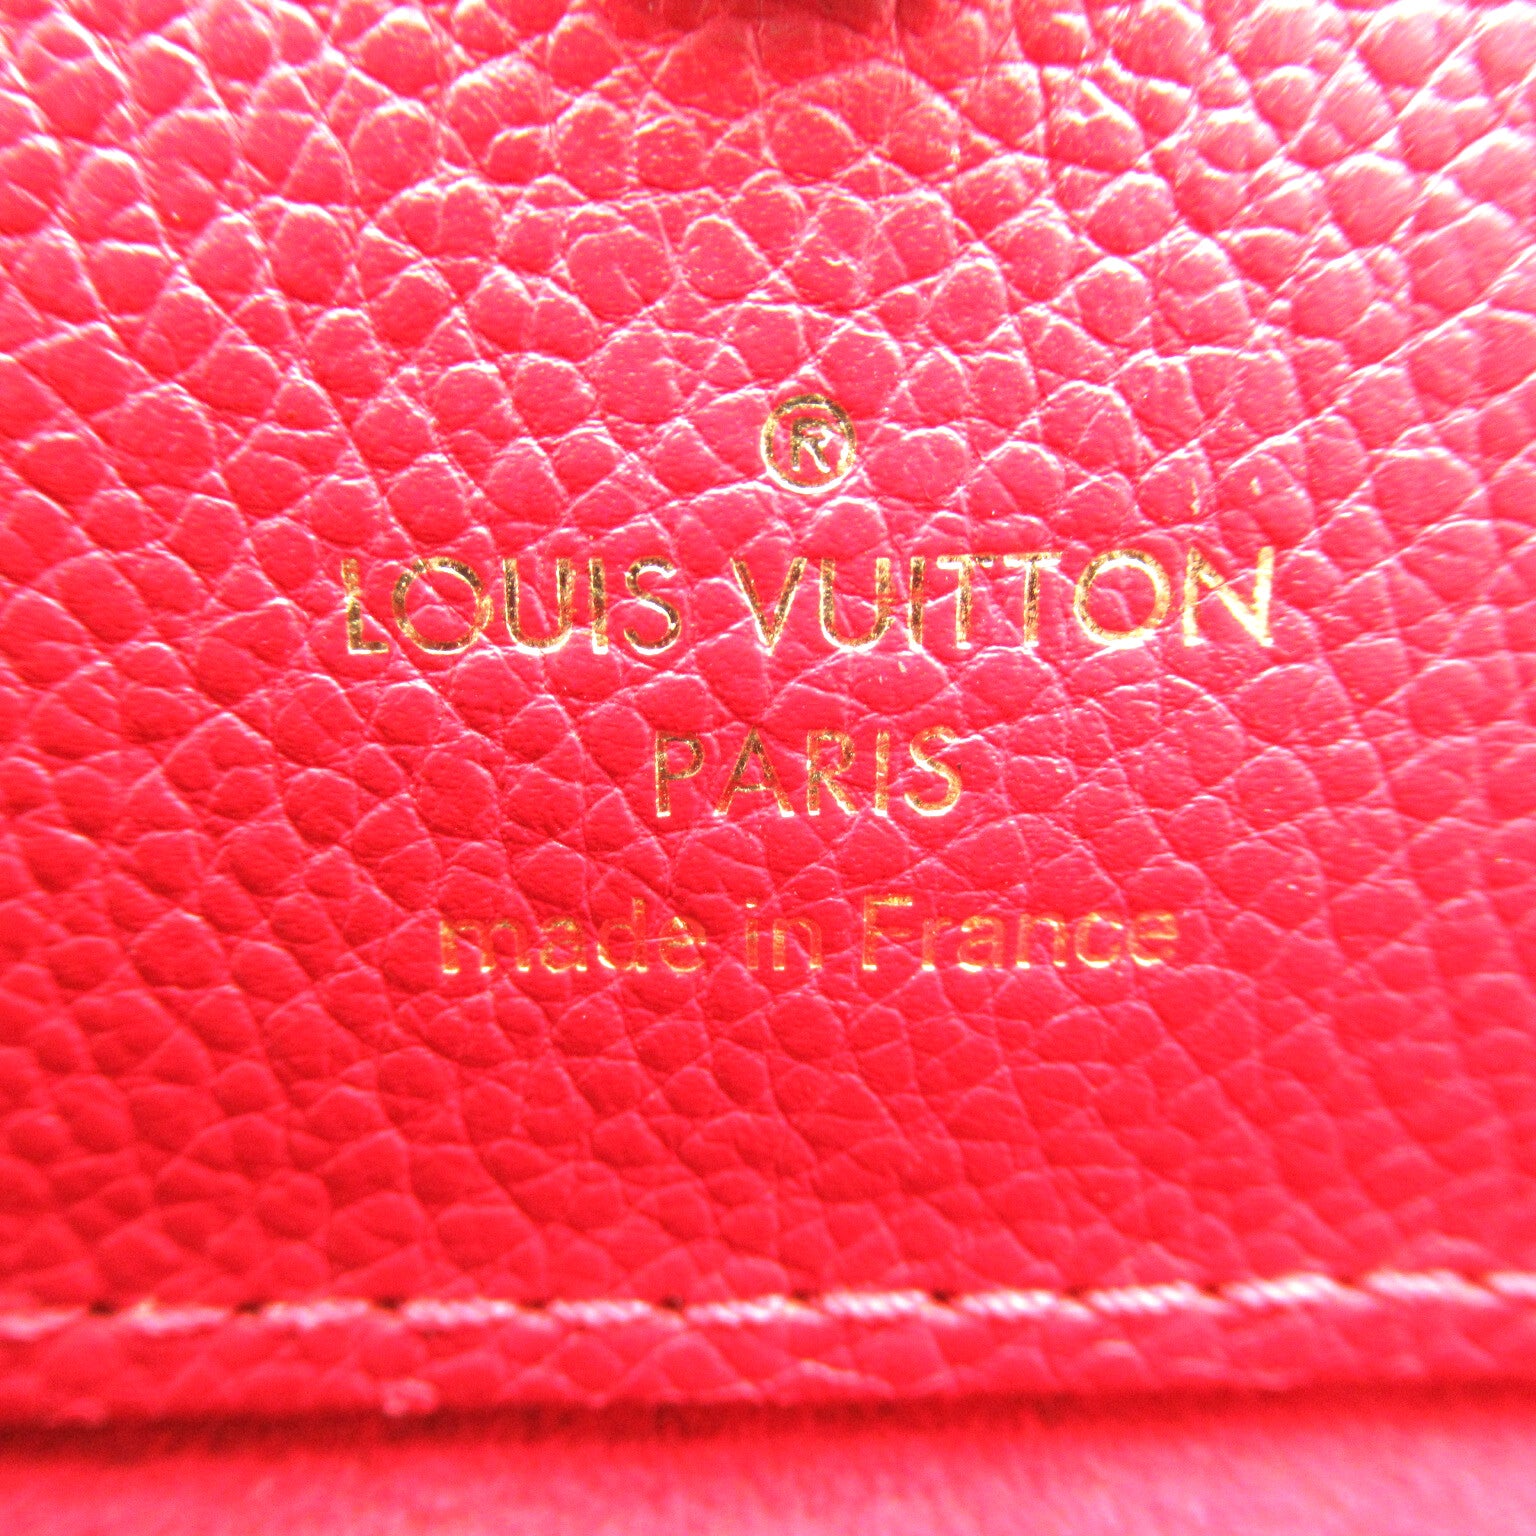 Louis Vuitton Louis Vuitton  2w Shoulder Bag PVC Coated Canvas Leather Monogram  Brown / Red M41738